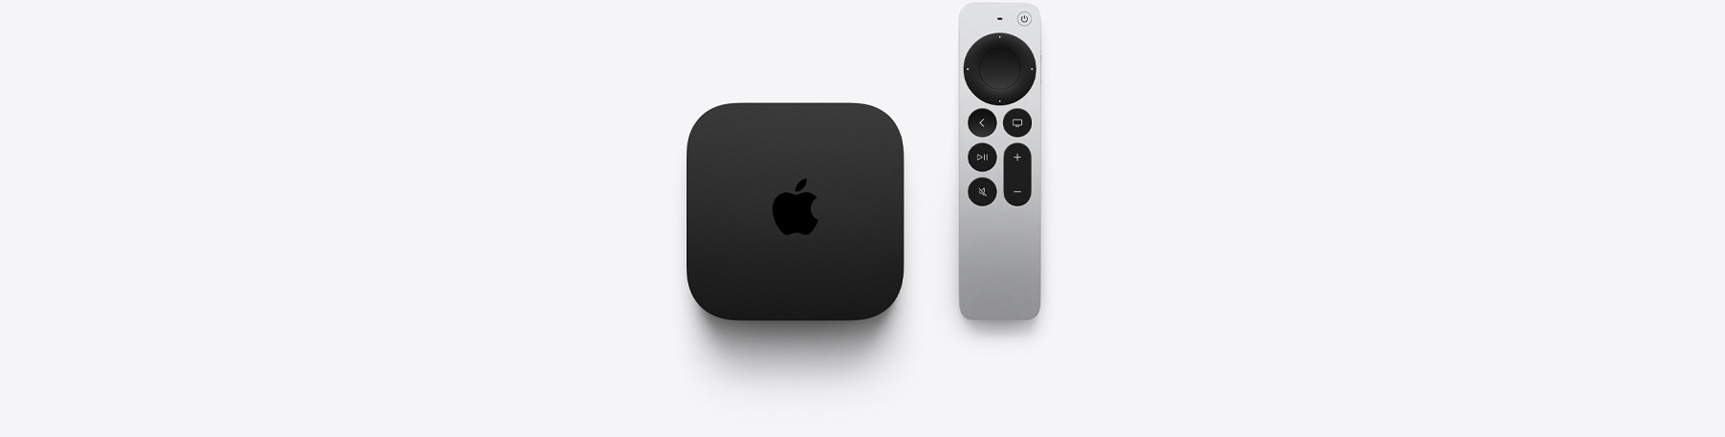 Apple negocia com emissoras para criar TV na internet